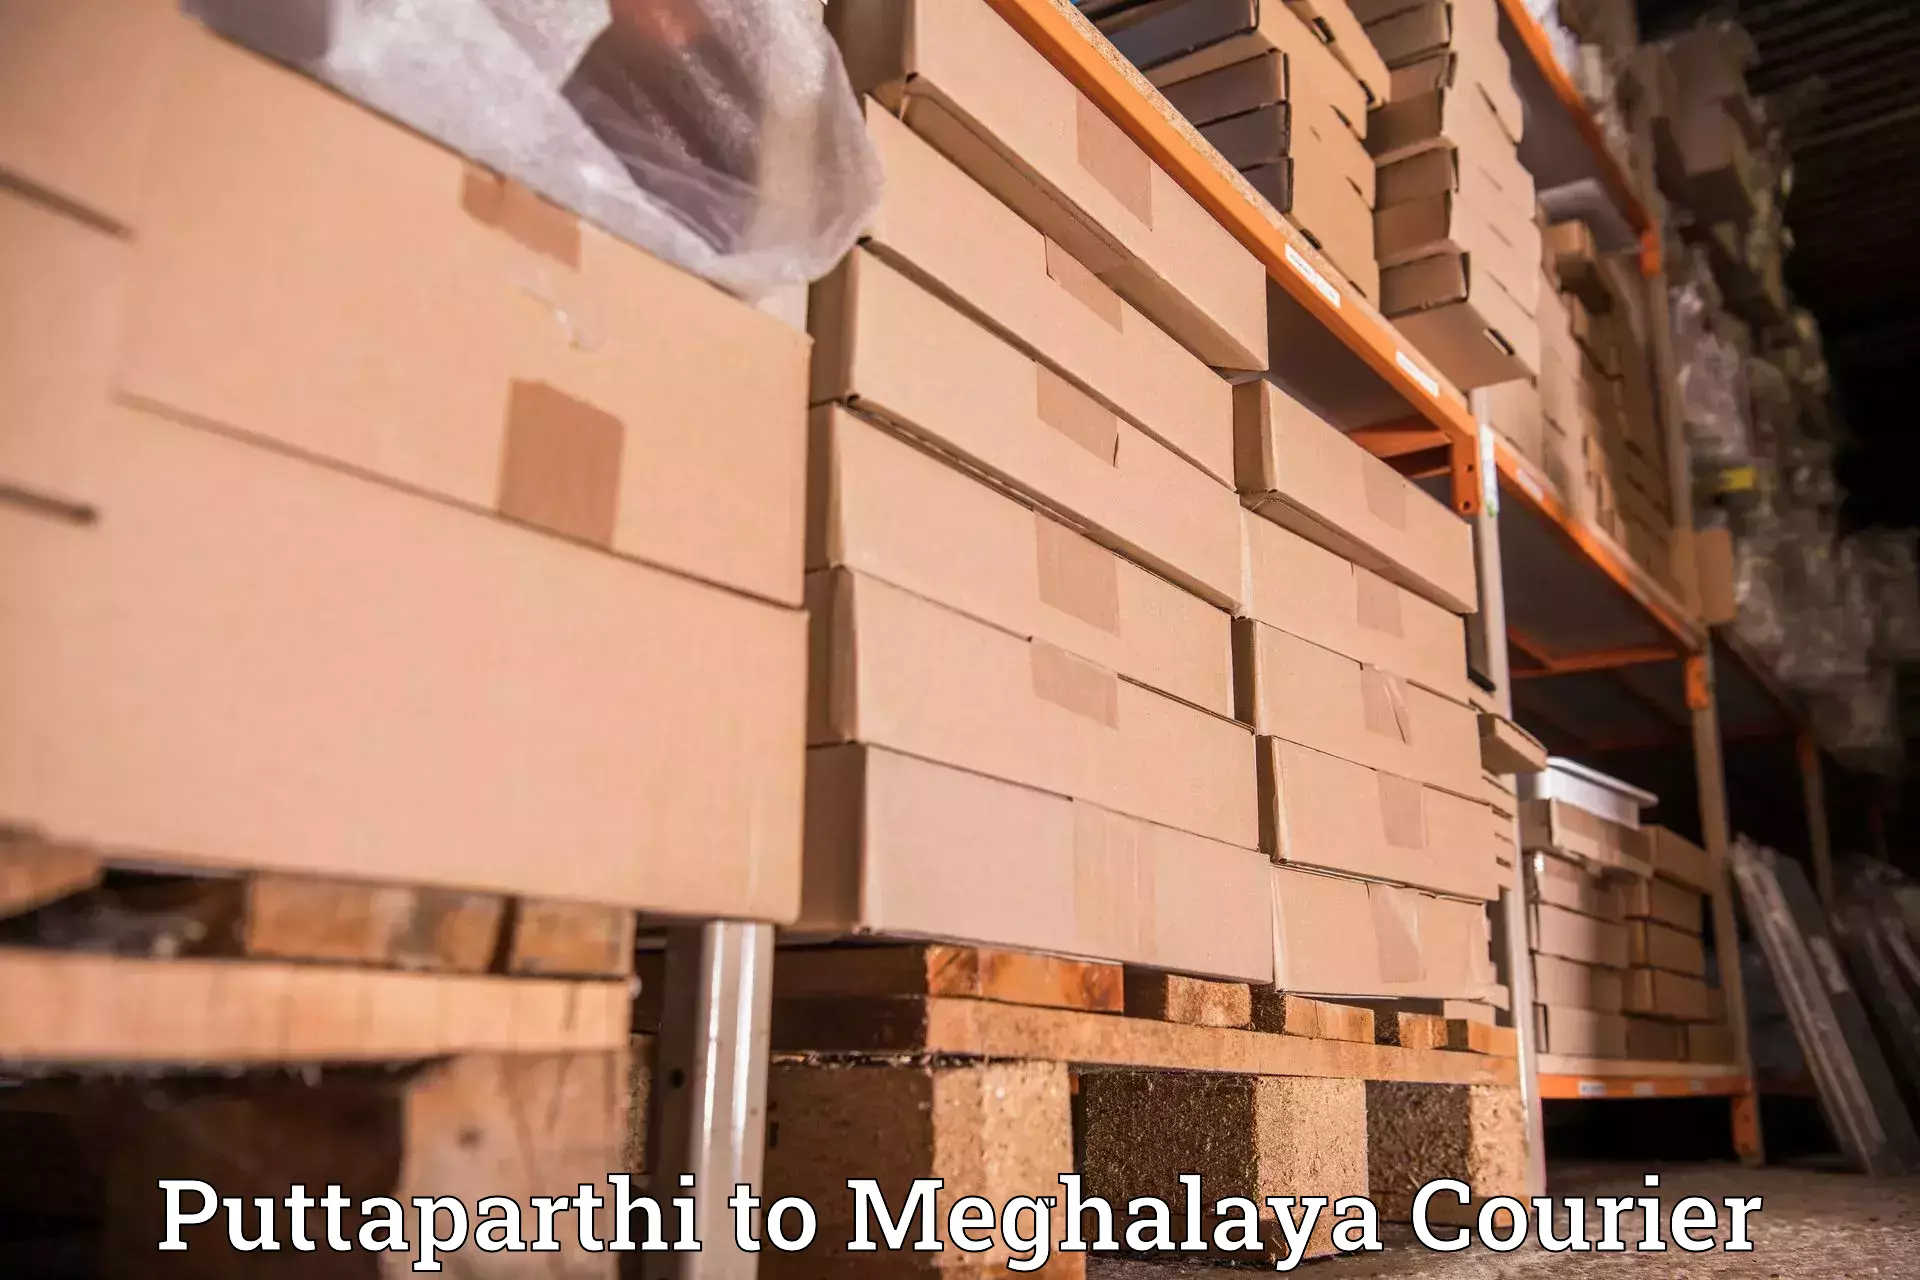 Reliable courier services Puttaparthi to Tikrikilla